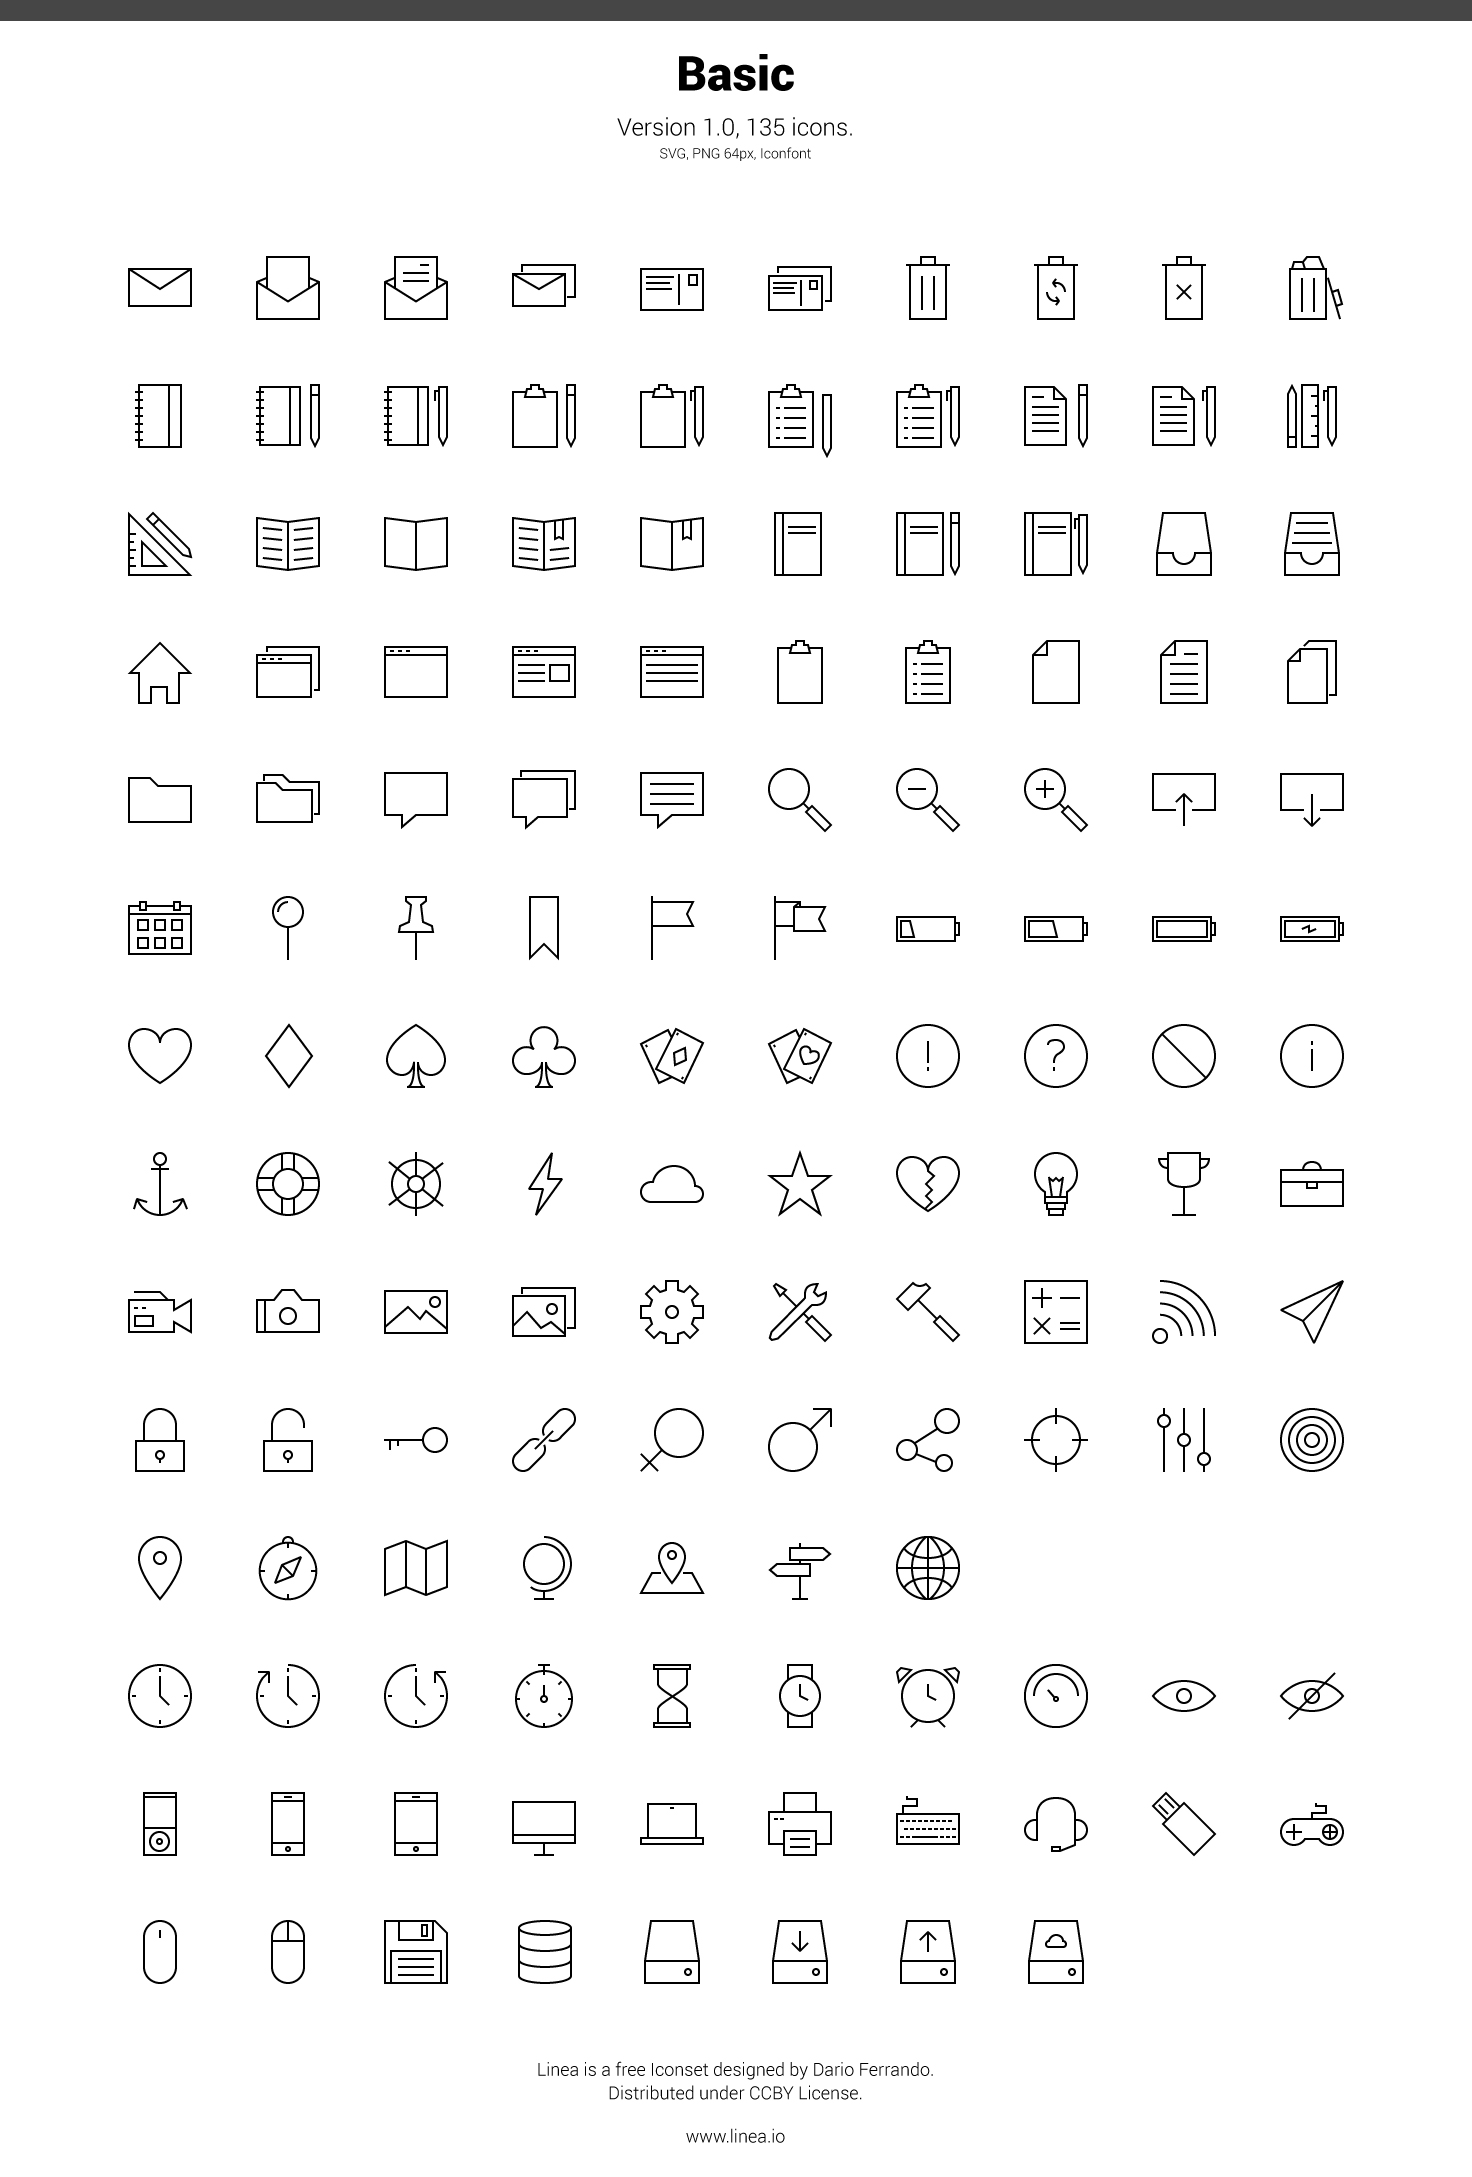 Descarga Linea: 160 iconos vectoriales minimalistas